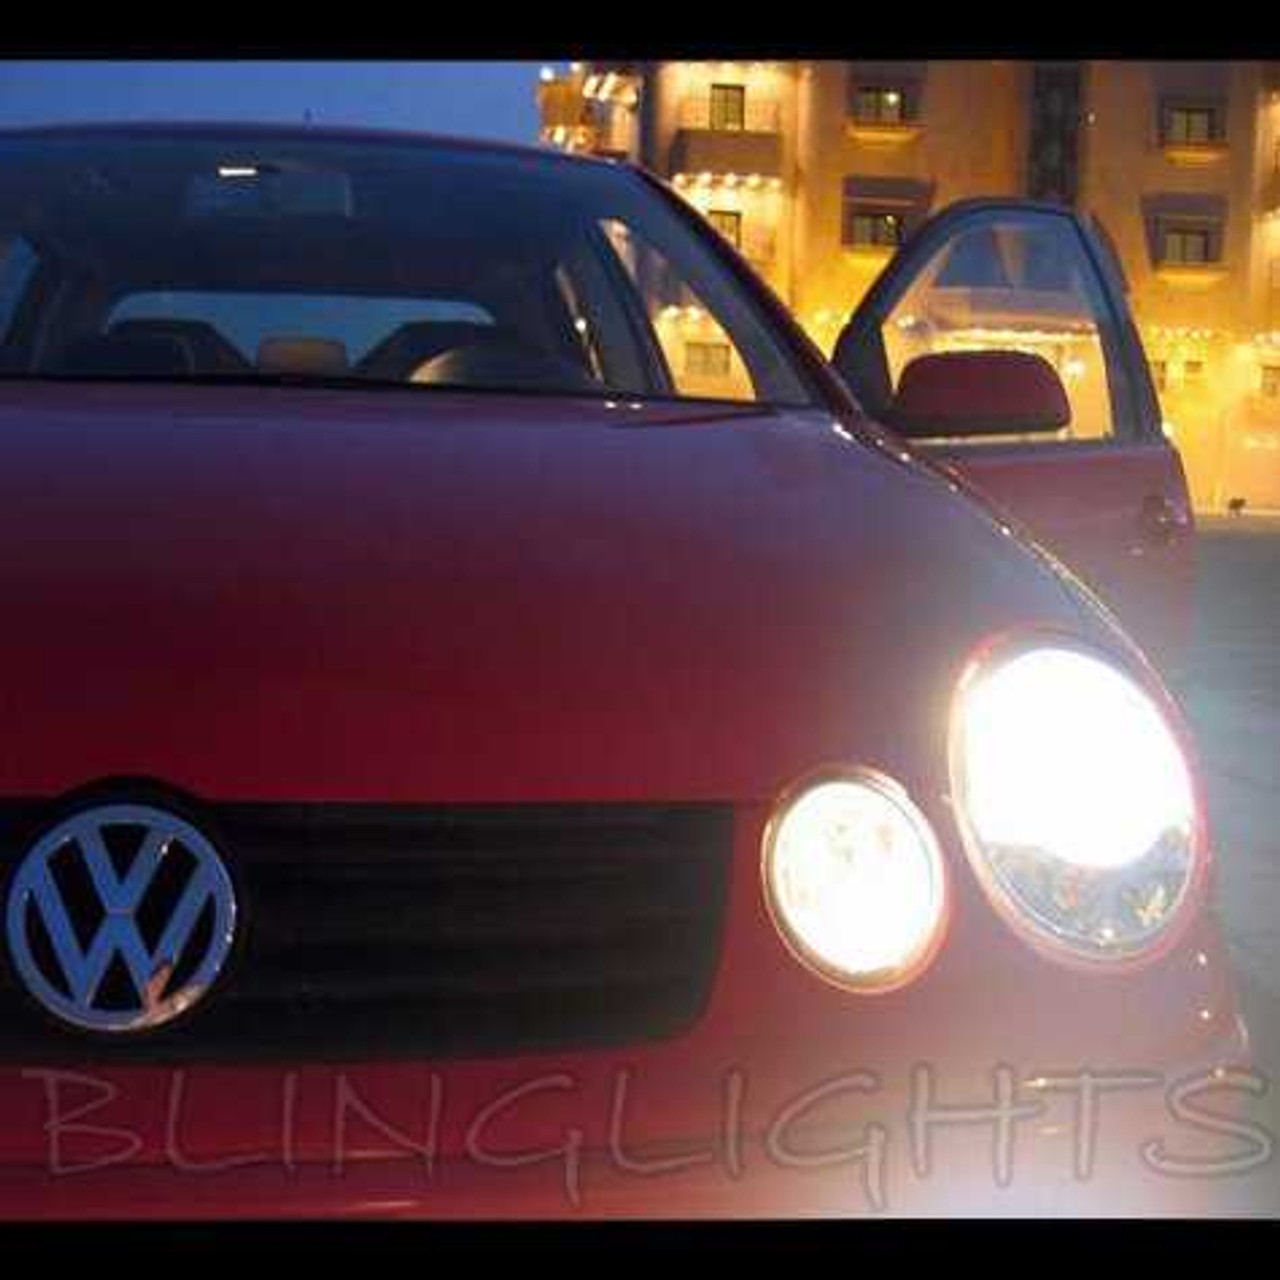 VW Polo 9n3 GTI Owners